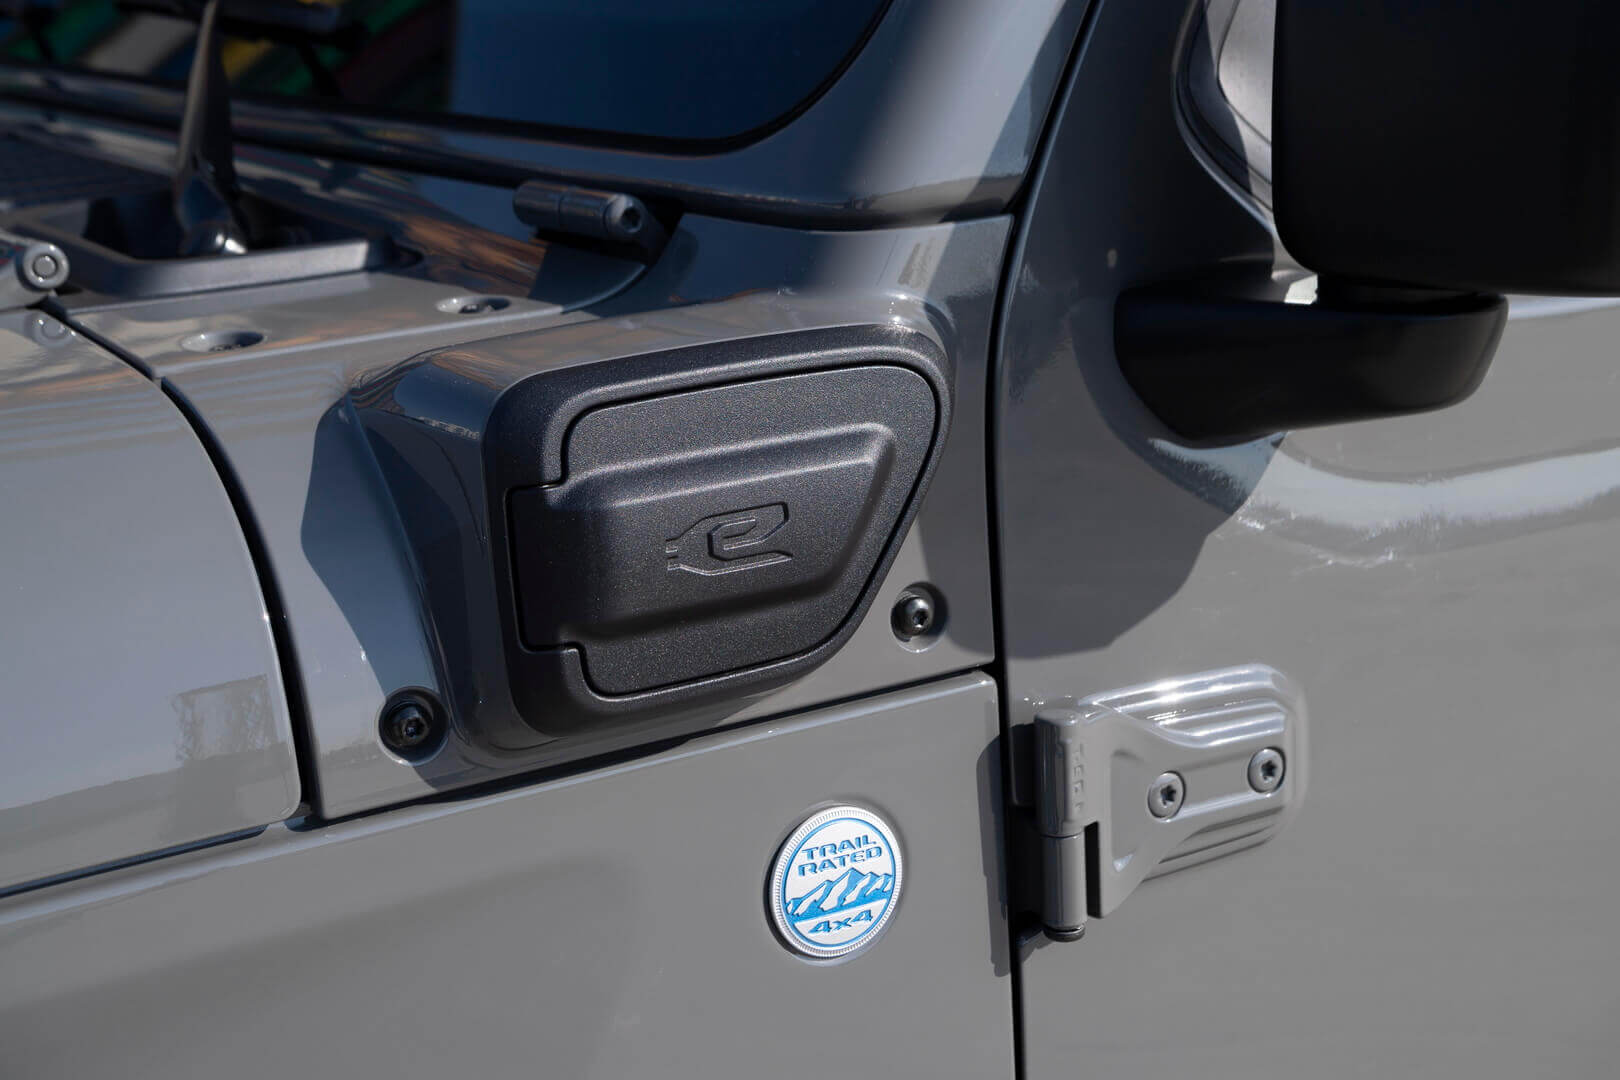 Обновленный Jeep Wrangler 2022 года будет продаваться в Европе исключительно как плагин-гибрид 4xe